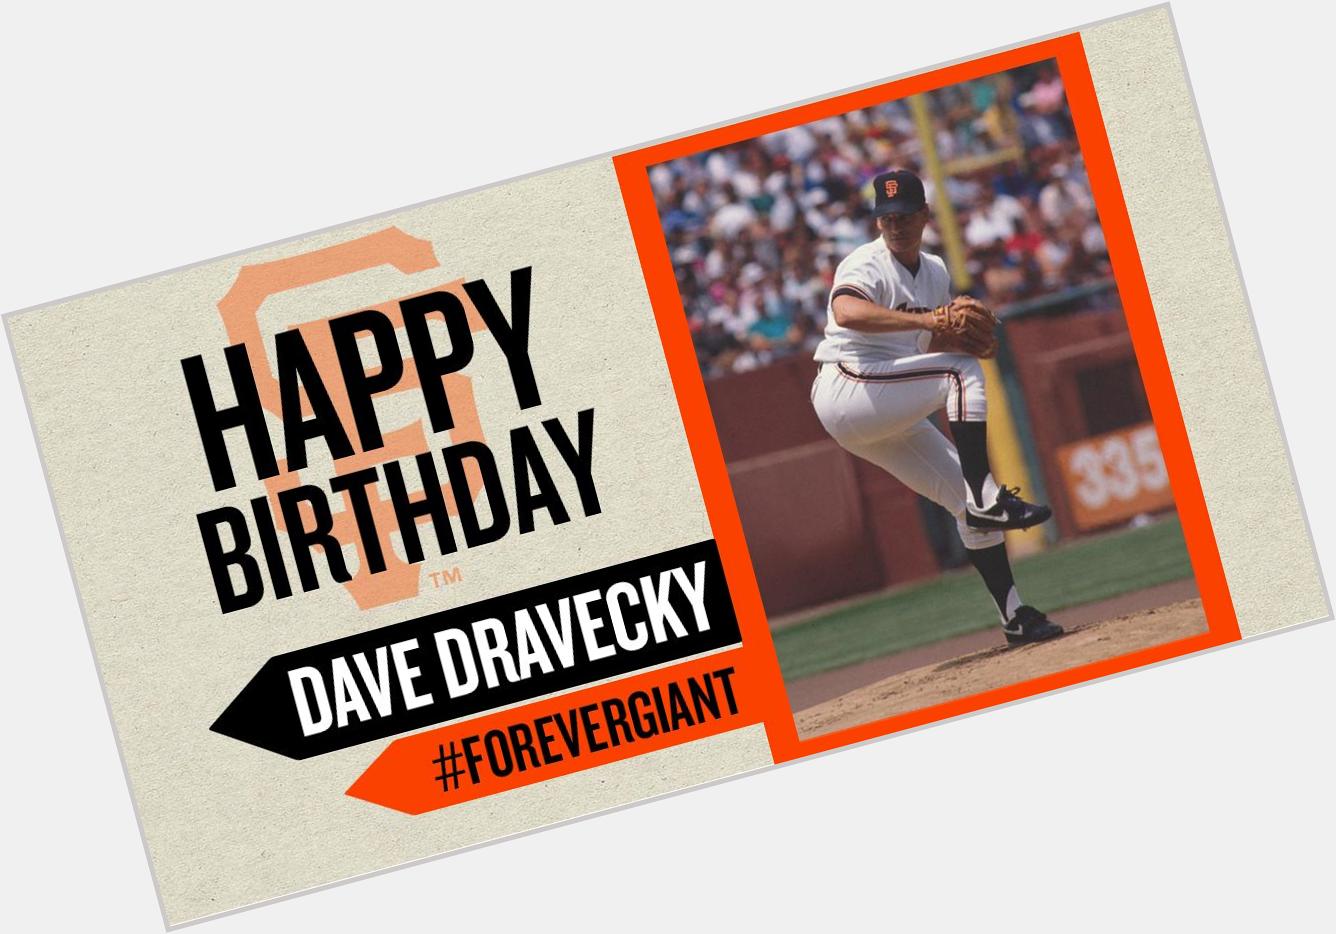 Happy Birthday to Dave Dravecky!  